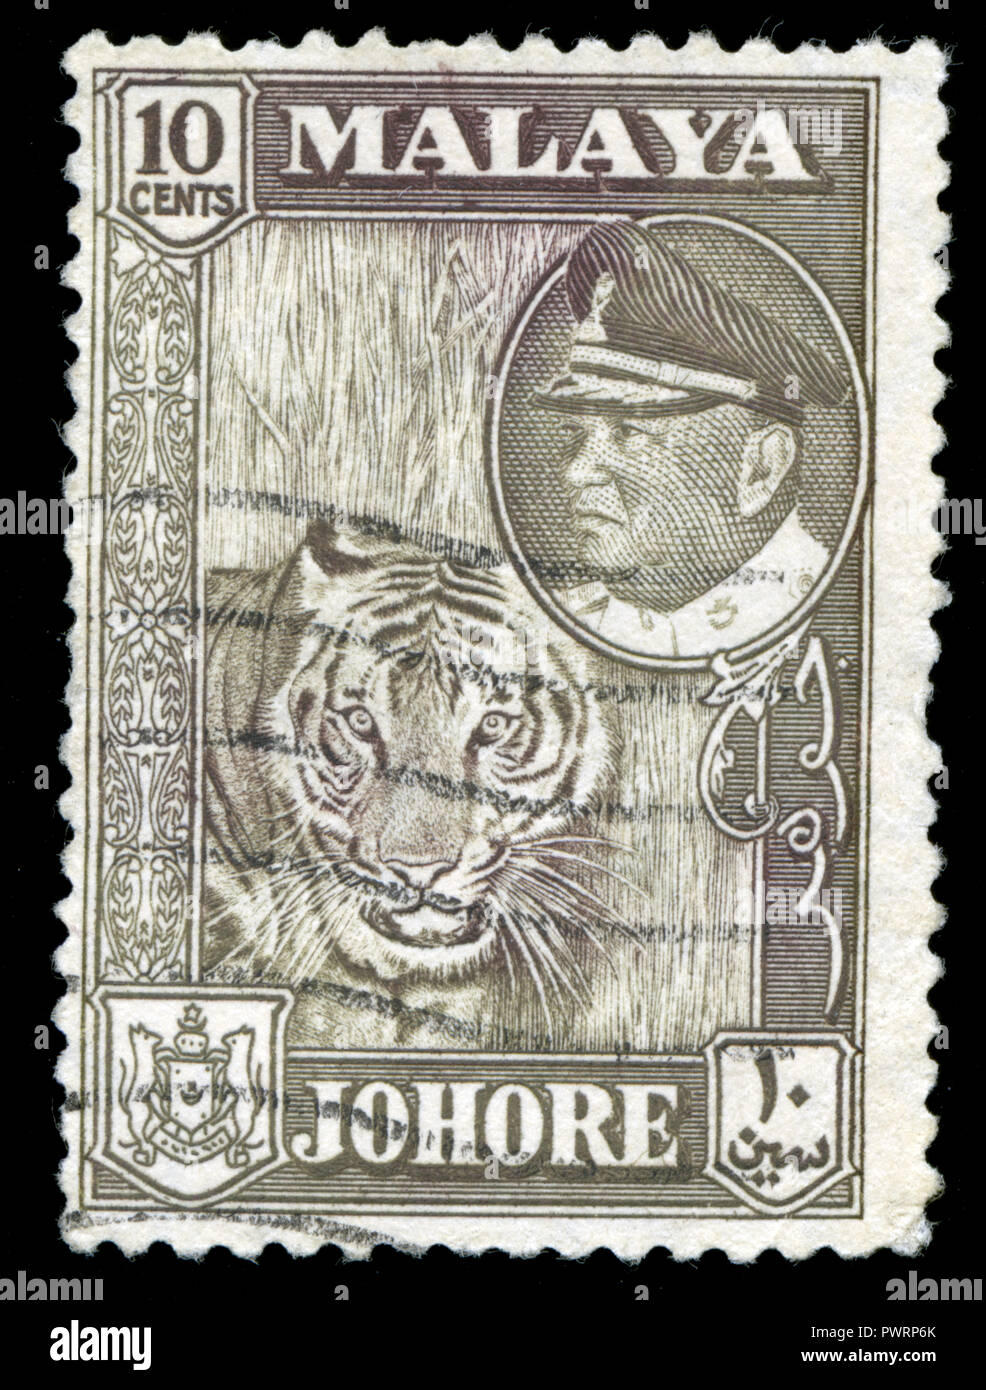 Timbre cachet de l'administration fédérale dans l'États malais Johore série émise en 1960 Banque D'Images